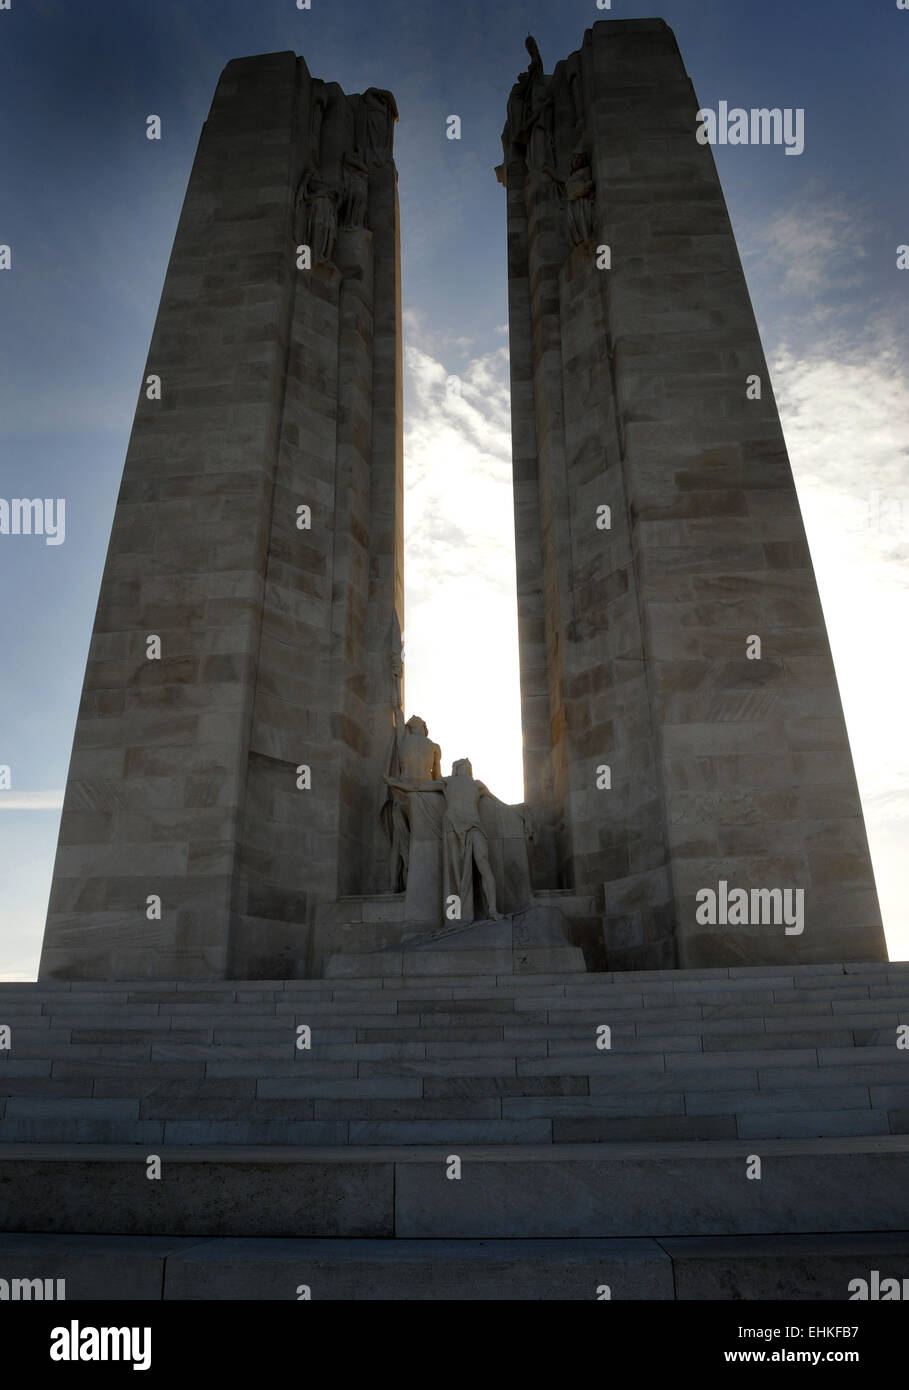 La magnifique et imposant monument de guerre canadien WW1, la crête de Vimy, en Belgique. Banque D'Images